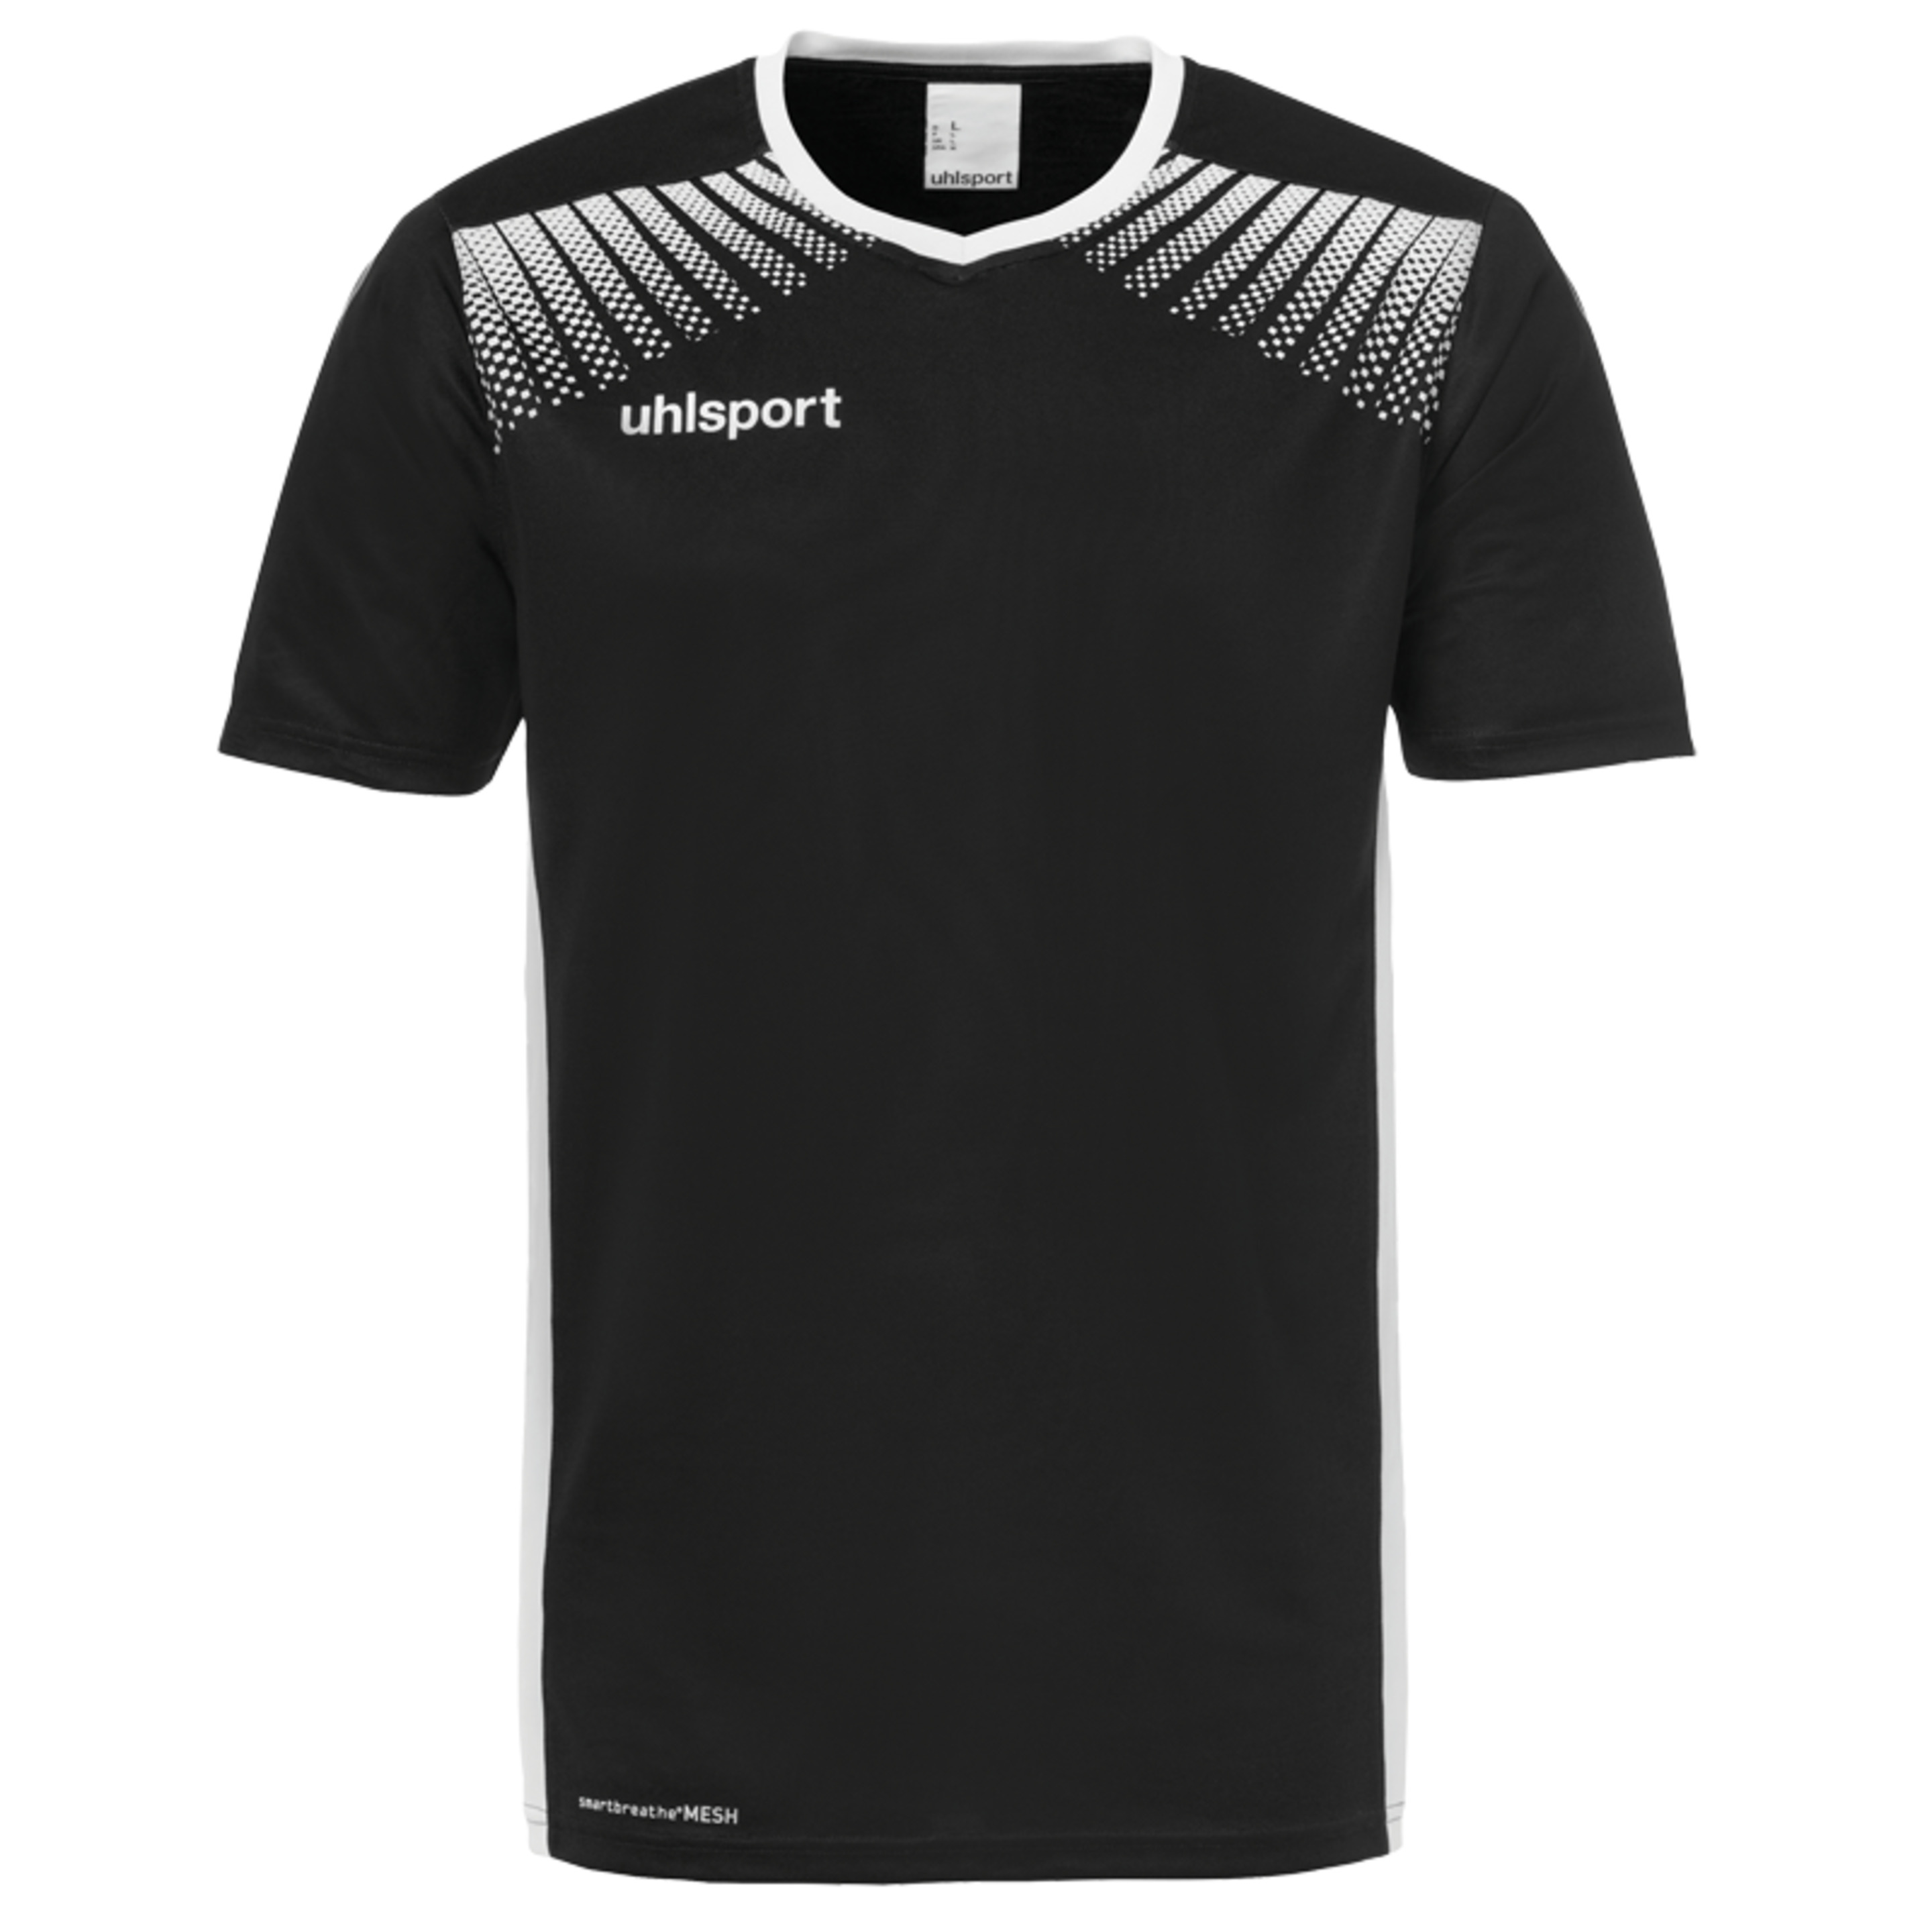 Goal Camiseta Mc Negro/blanco Uhlsport